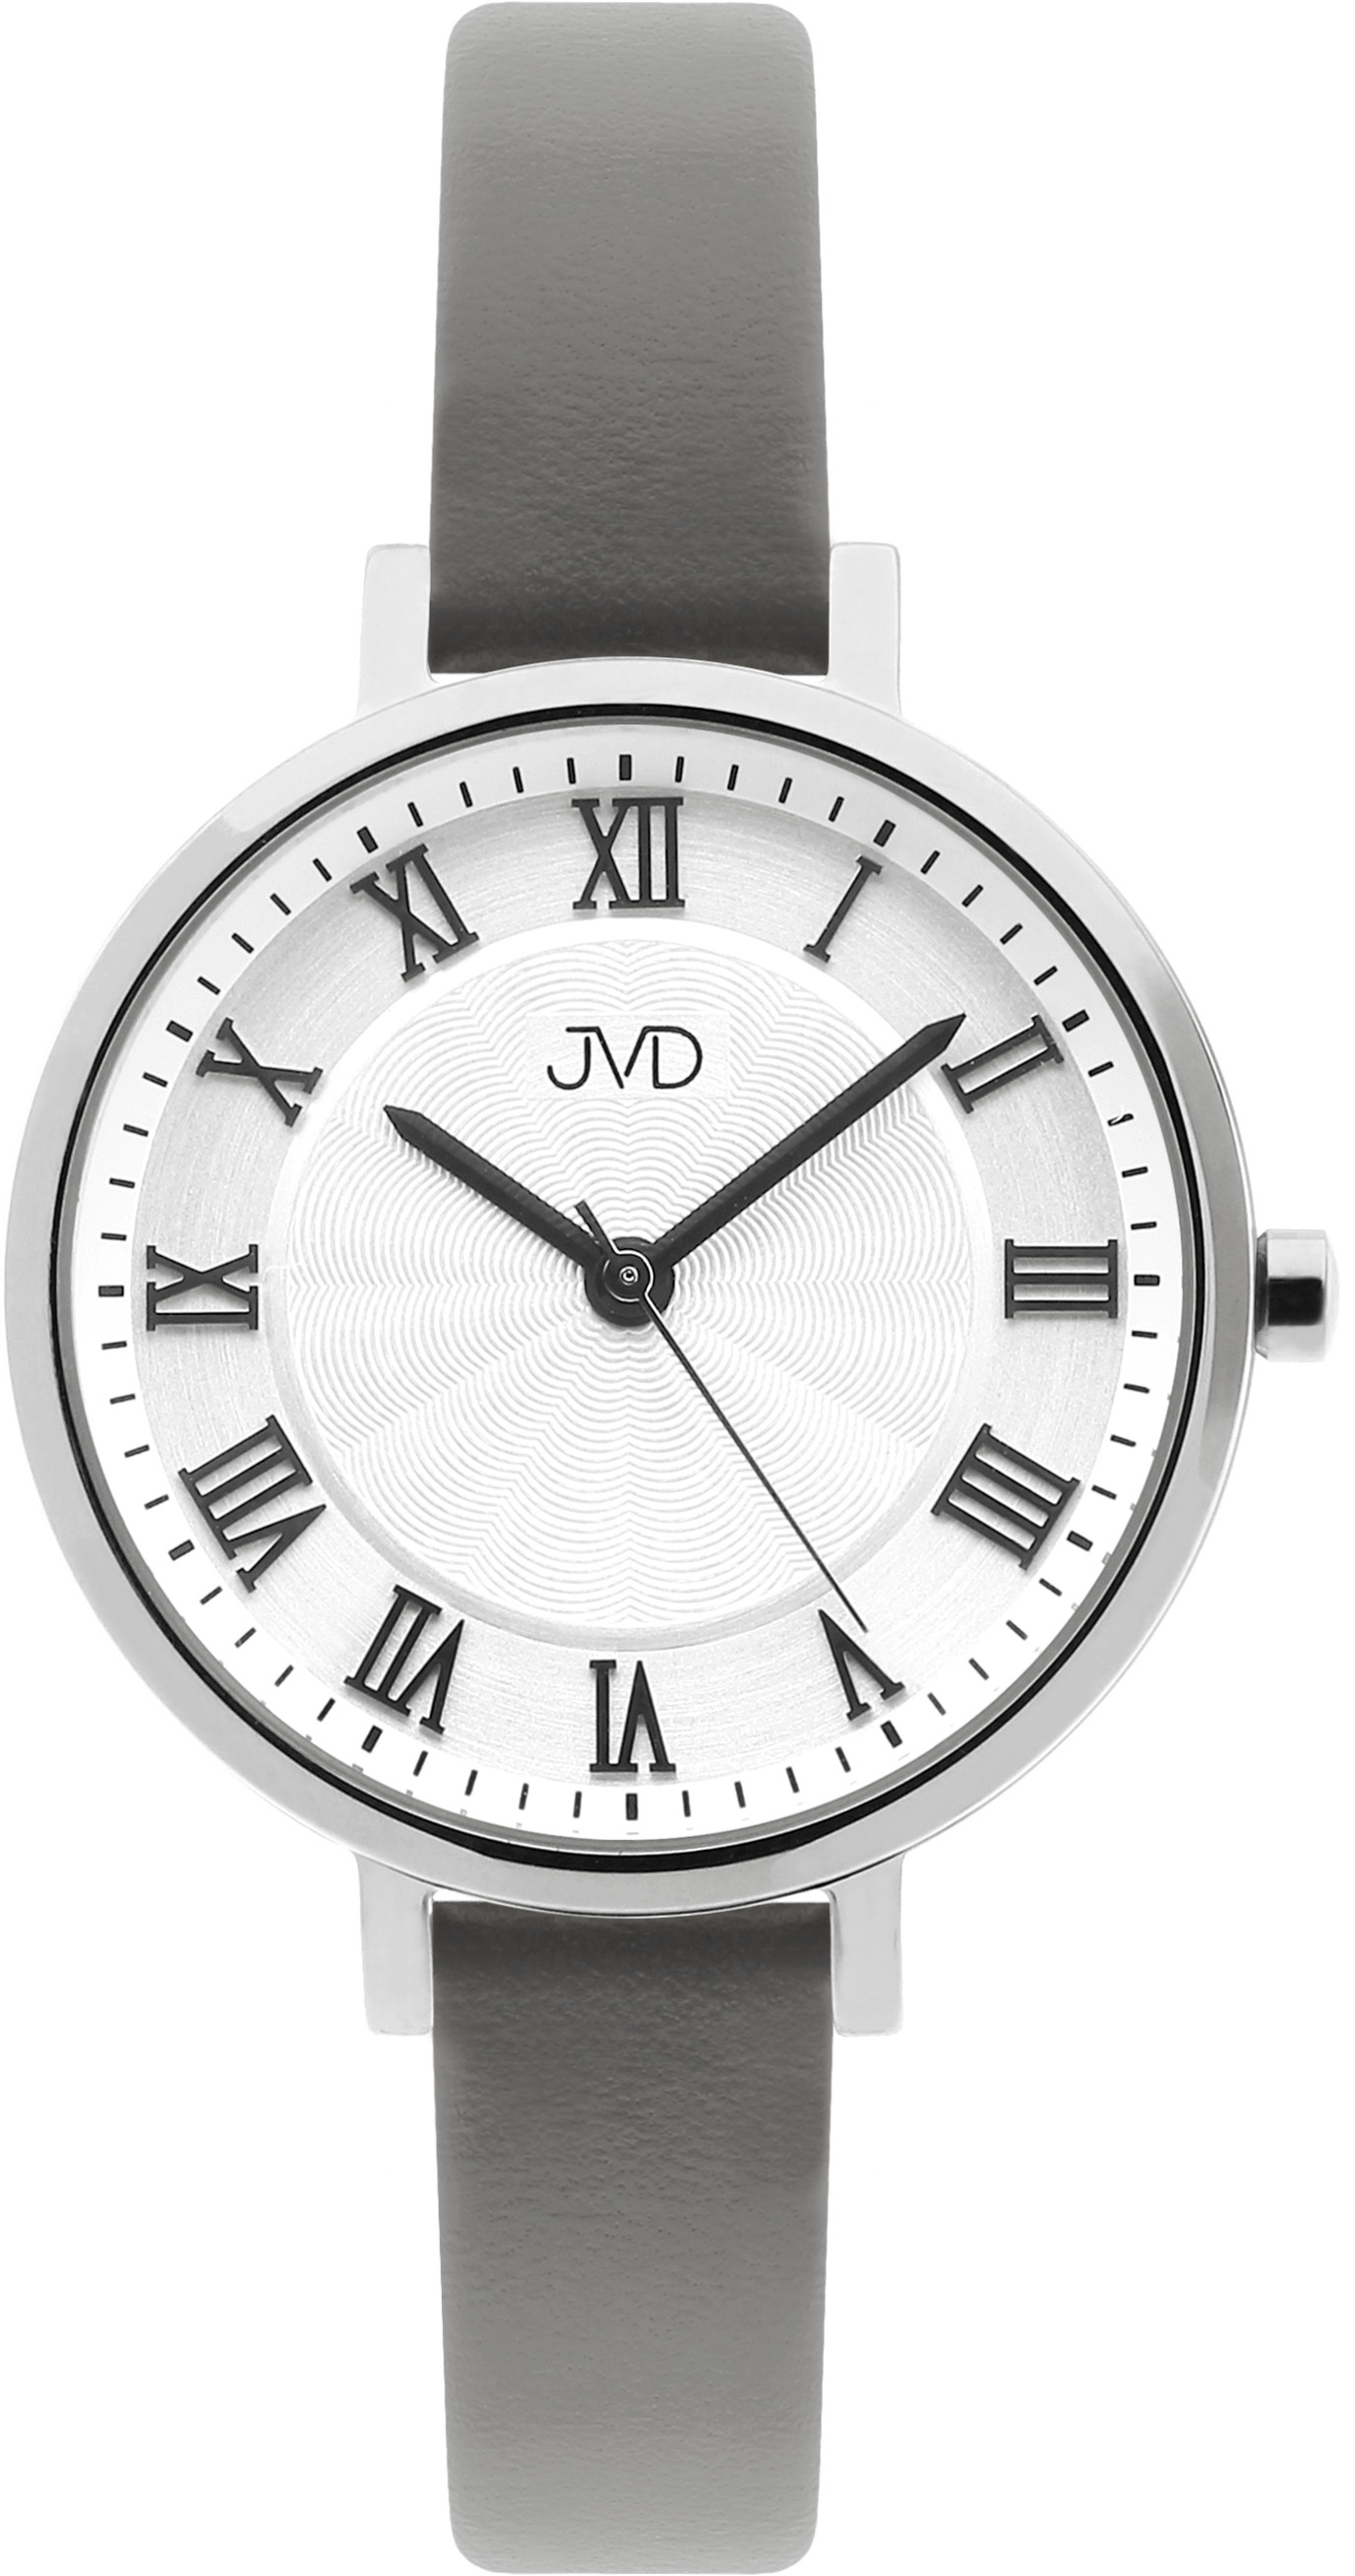 JVD Analogové hodinky JZ203.3